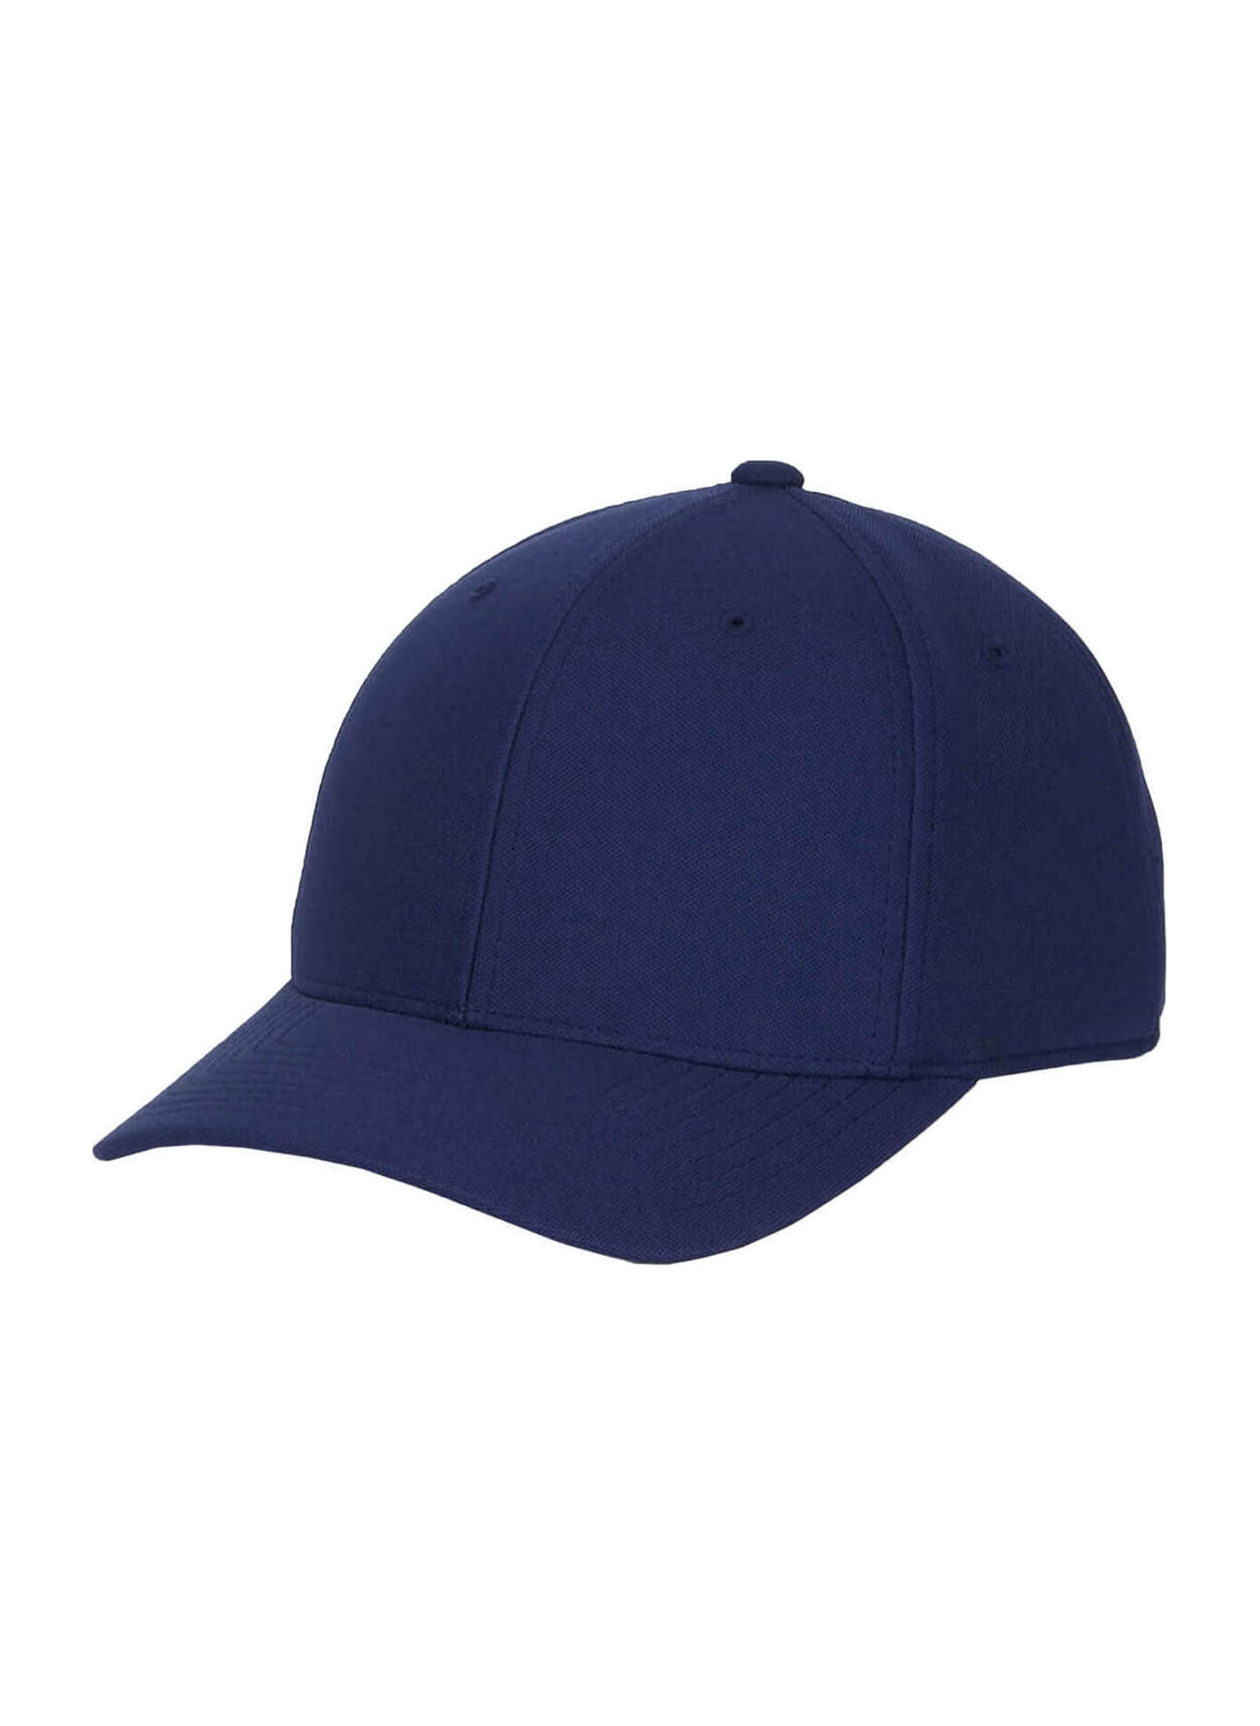 Flexfit Navy Cool & Dry Mini Pique Hat